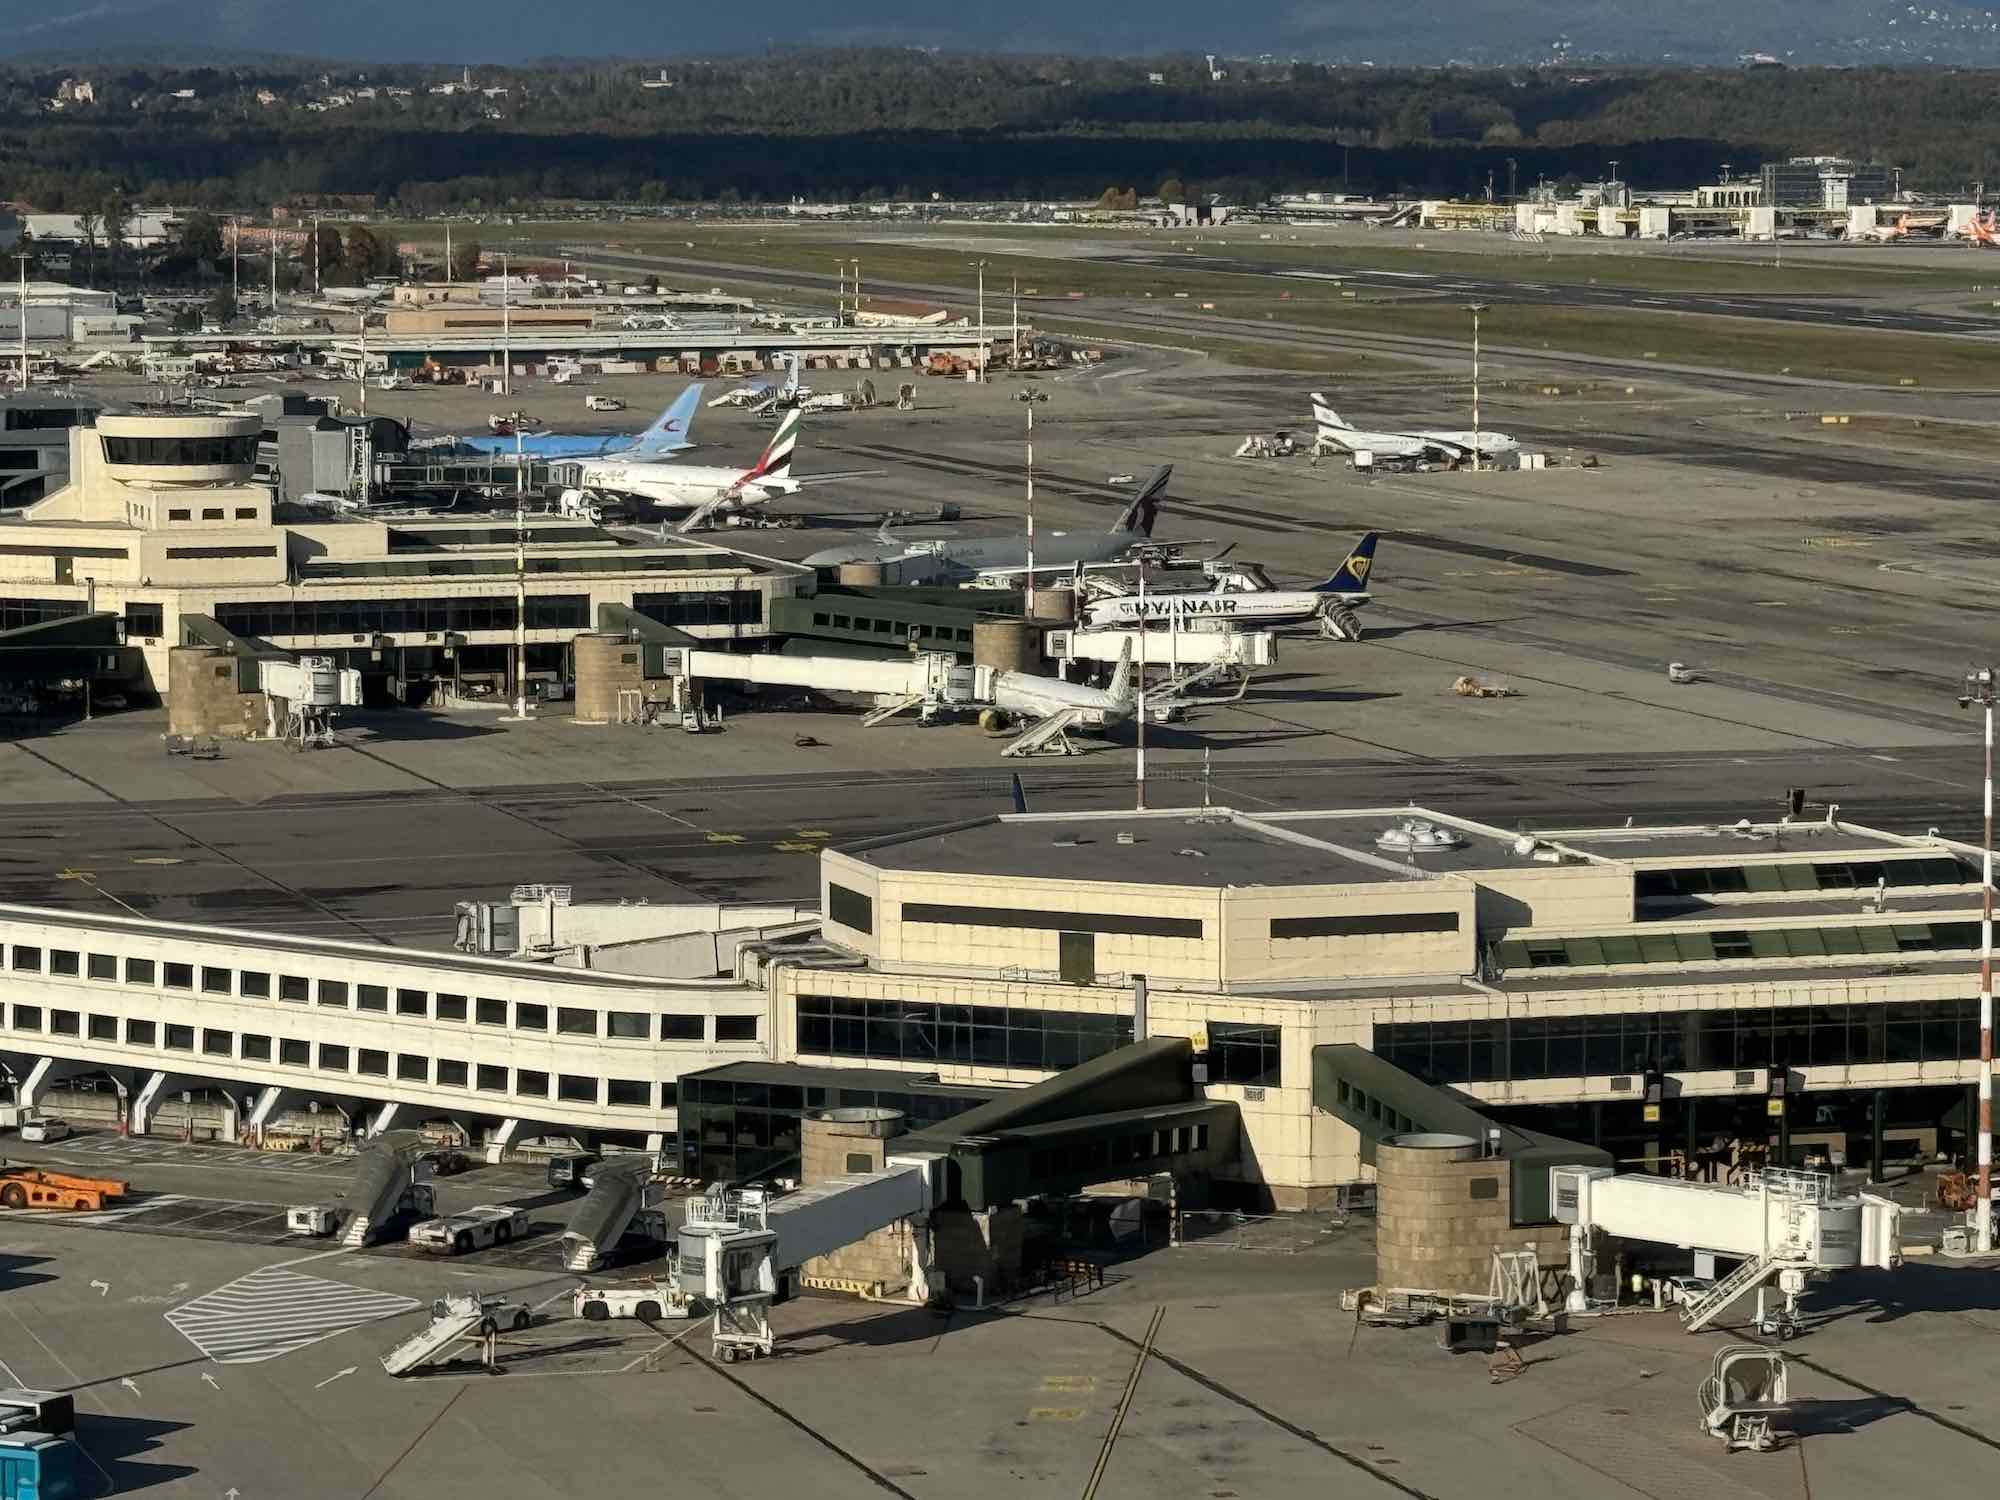 ITA Airways abbandona Malpensa, le ragioni NON ufficiali che hanno portato alla storica decisione